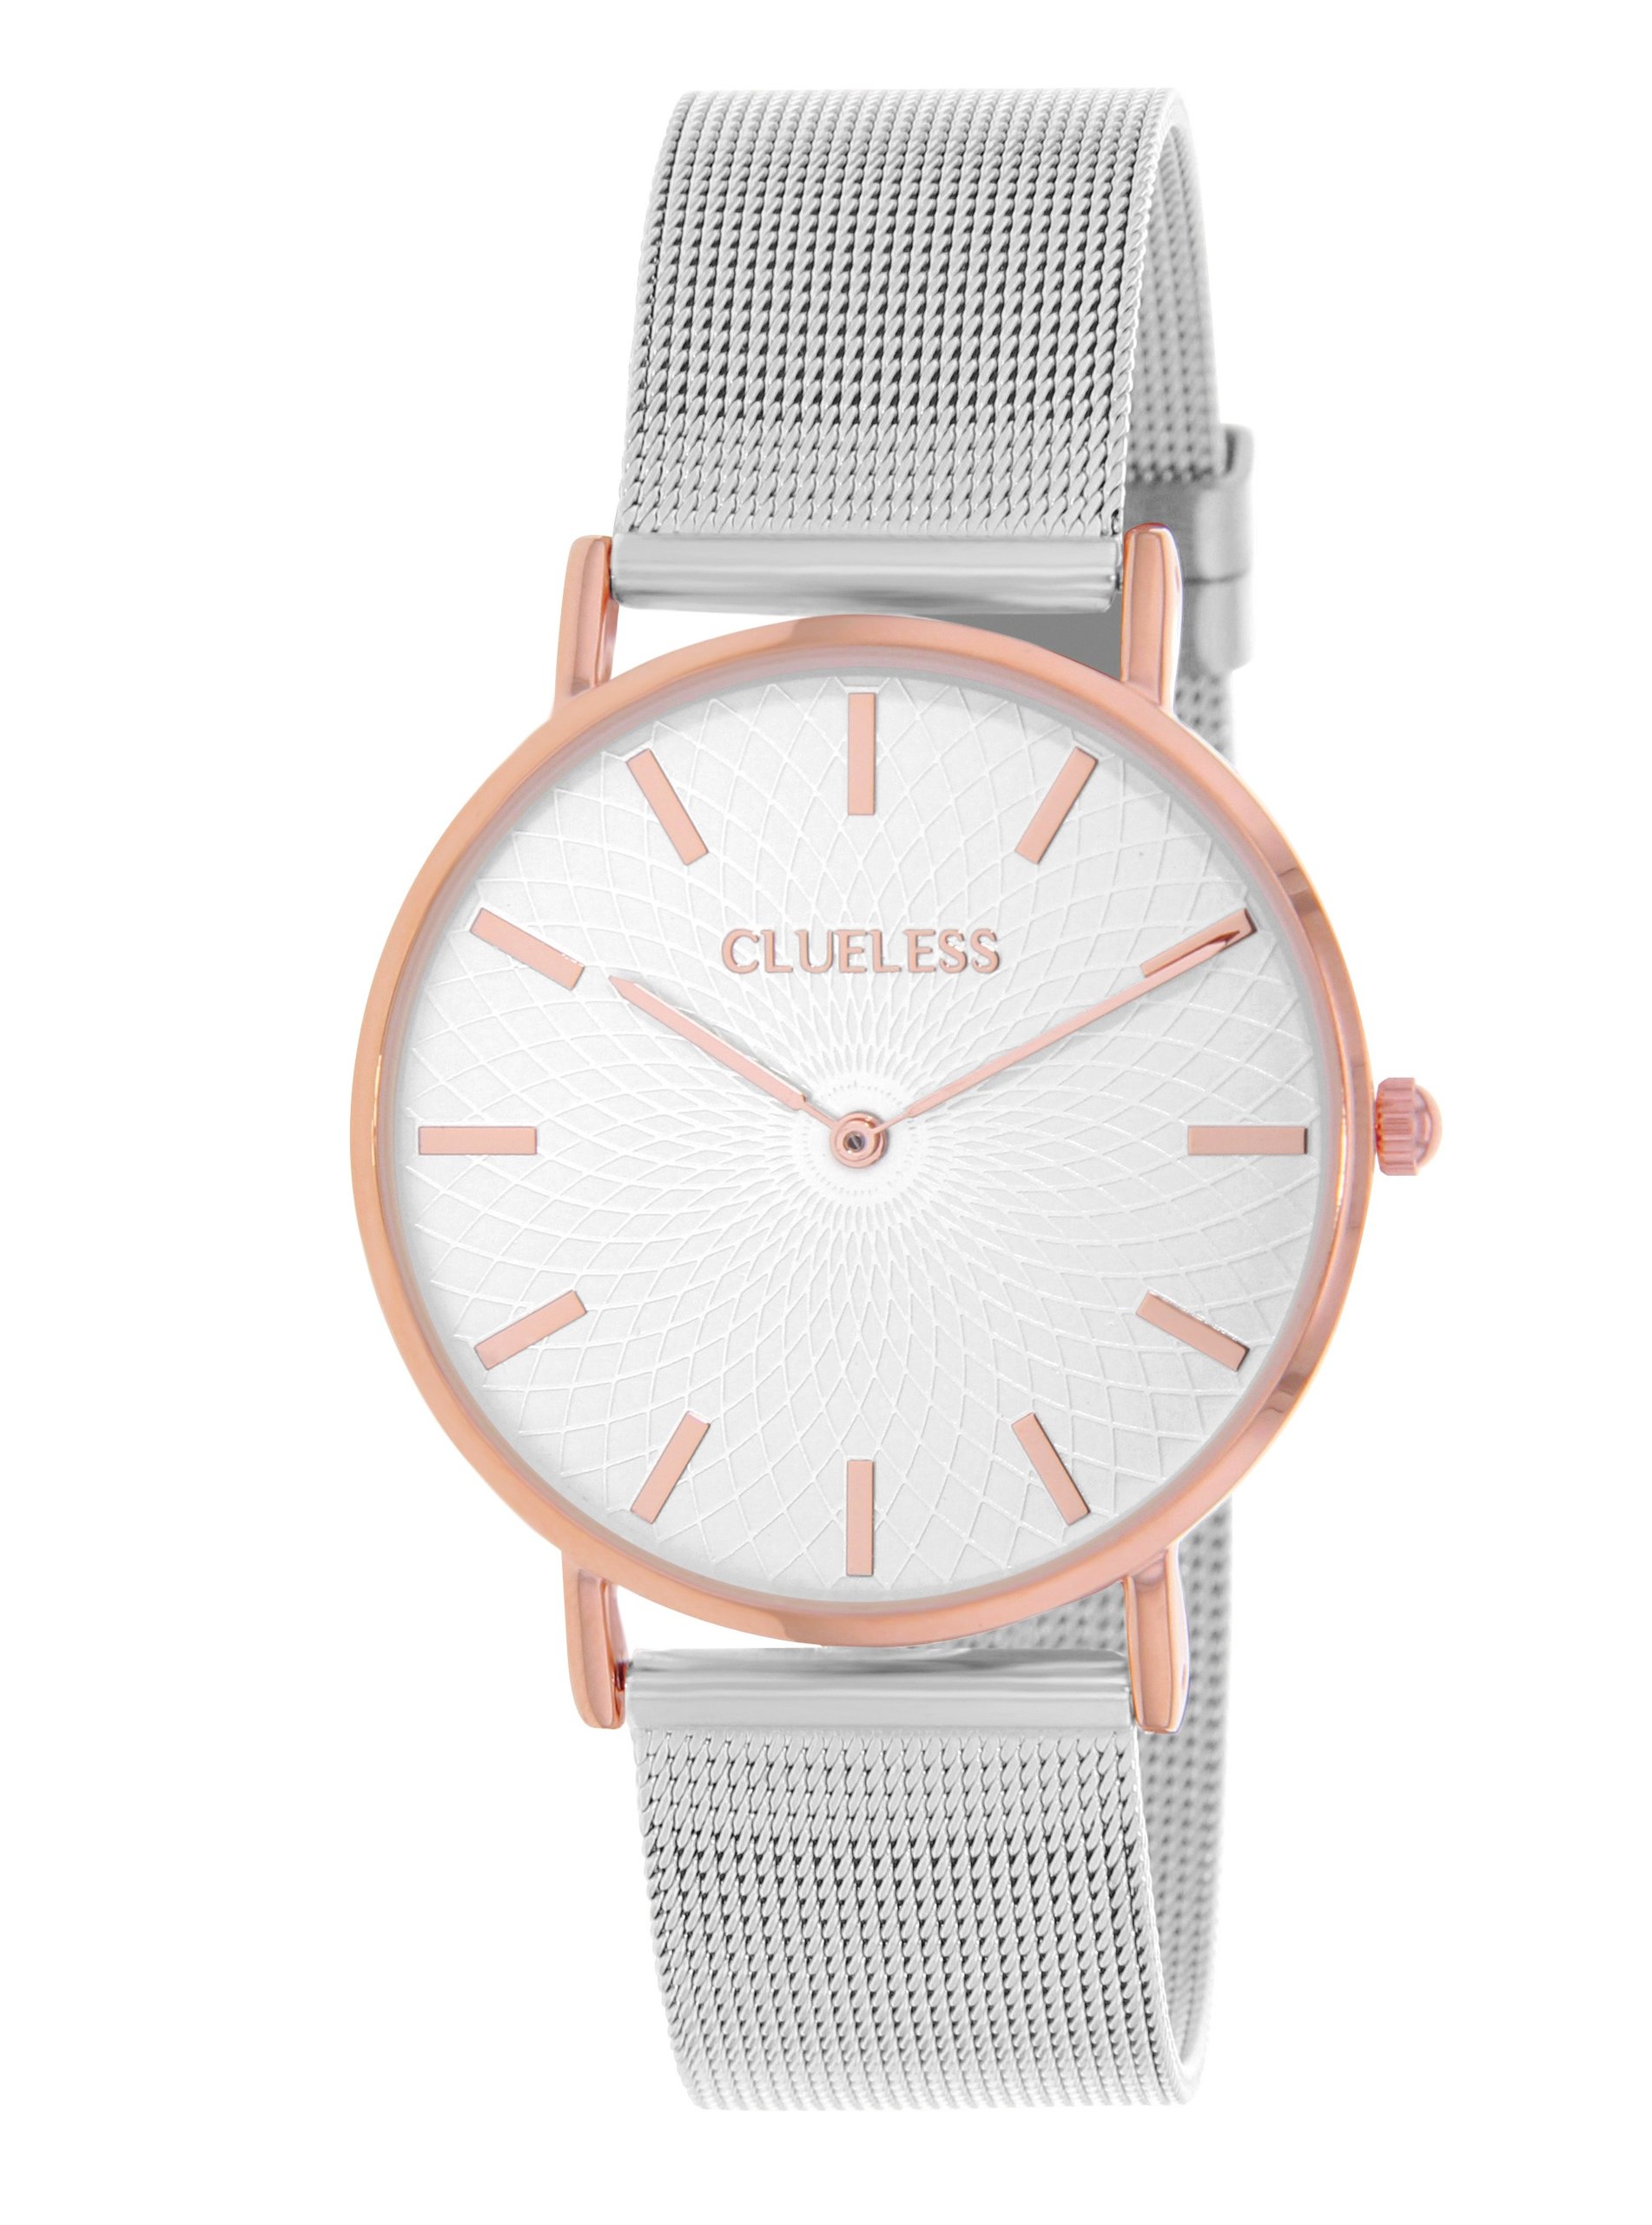 Dámské hodinky s nerezovým páskem ve stříbrné barvě Clueless